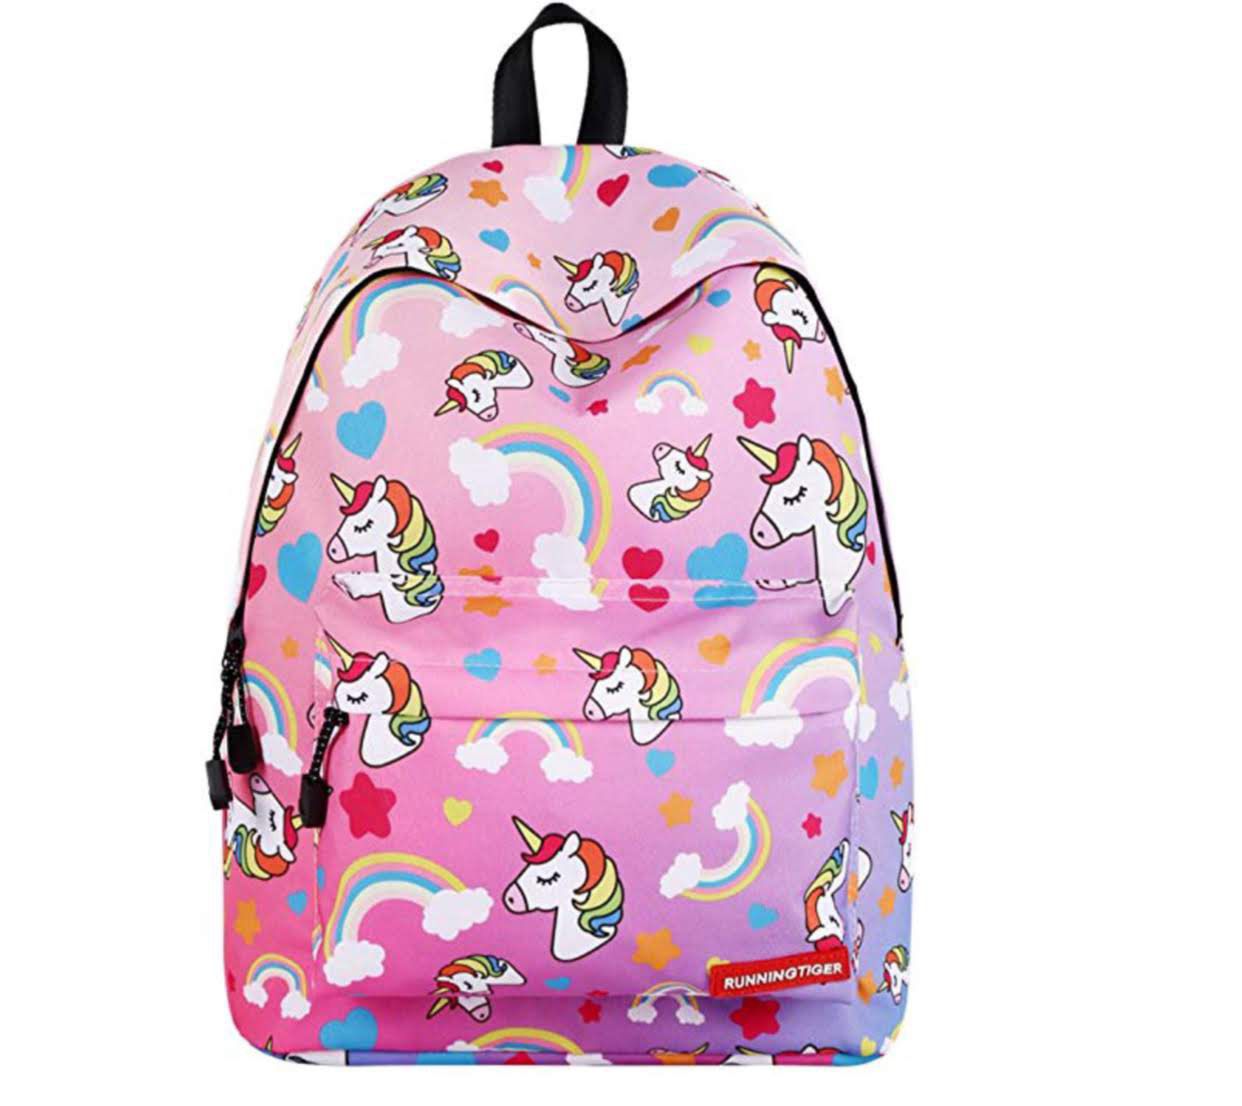 Unicorn cute backpack new.